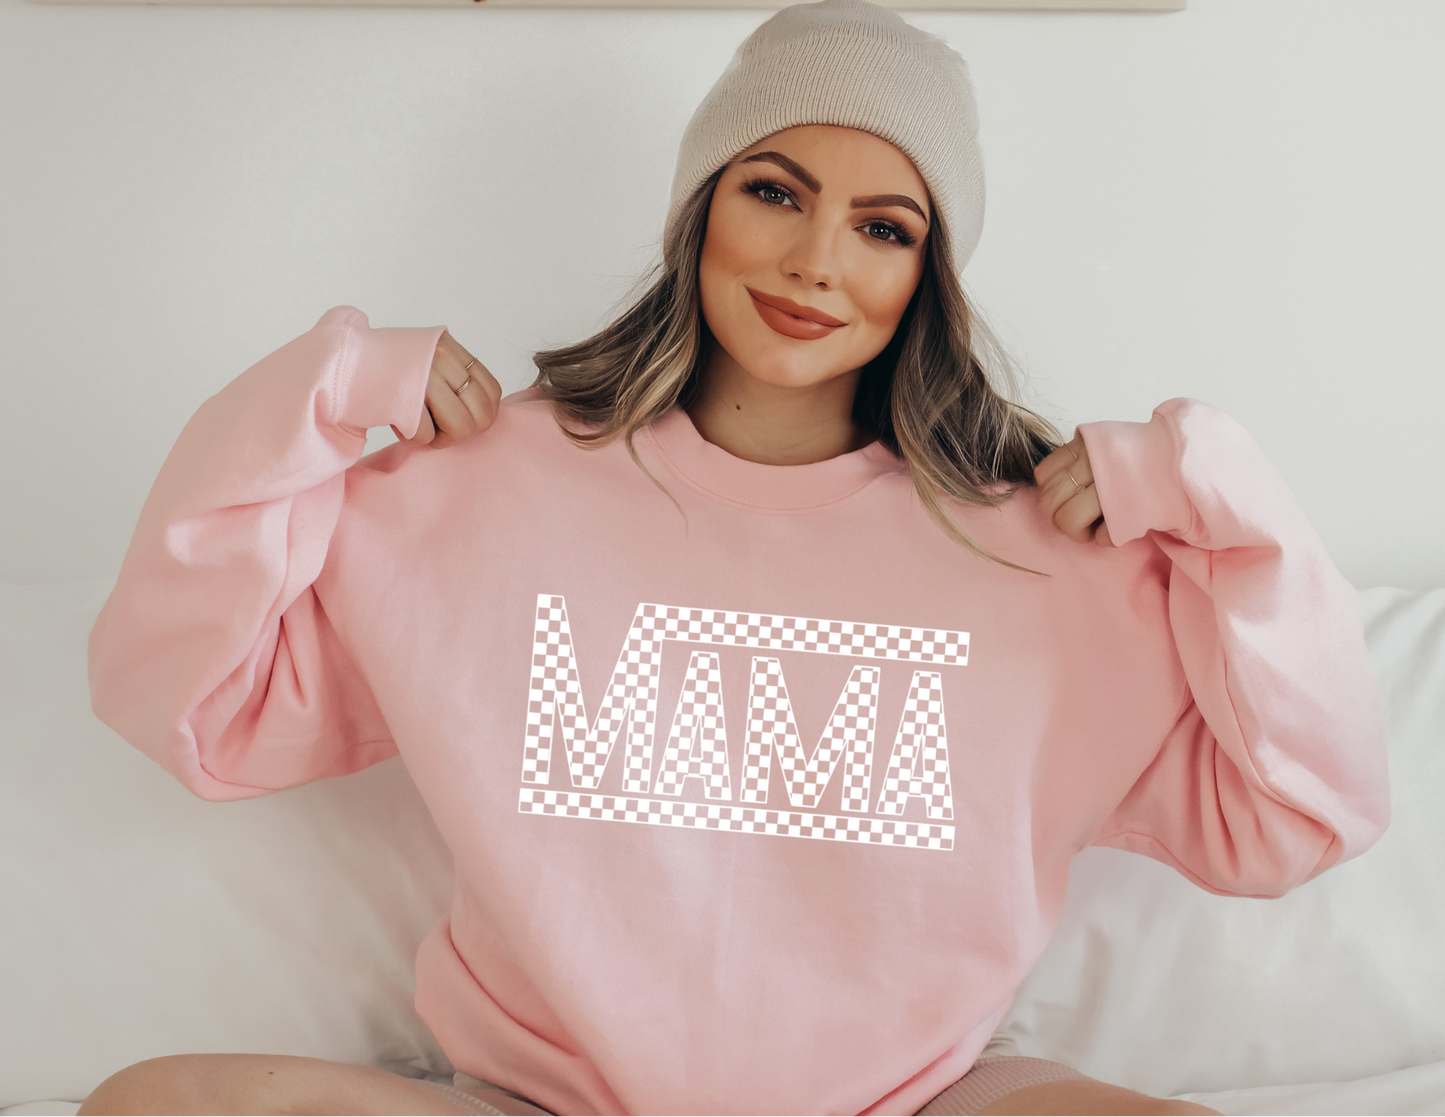 Mama Checkered Sweatshirt